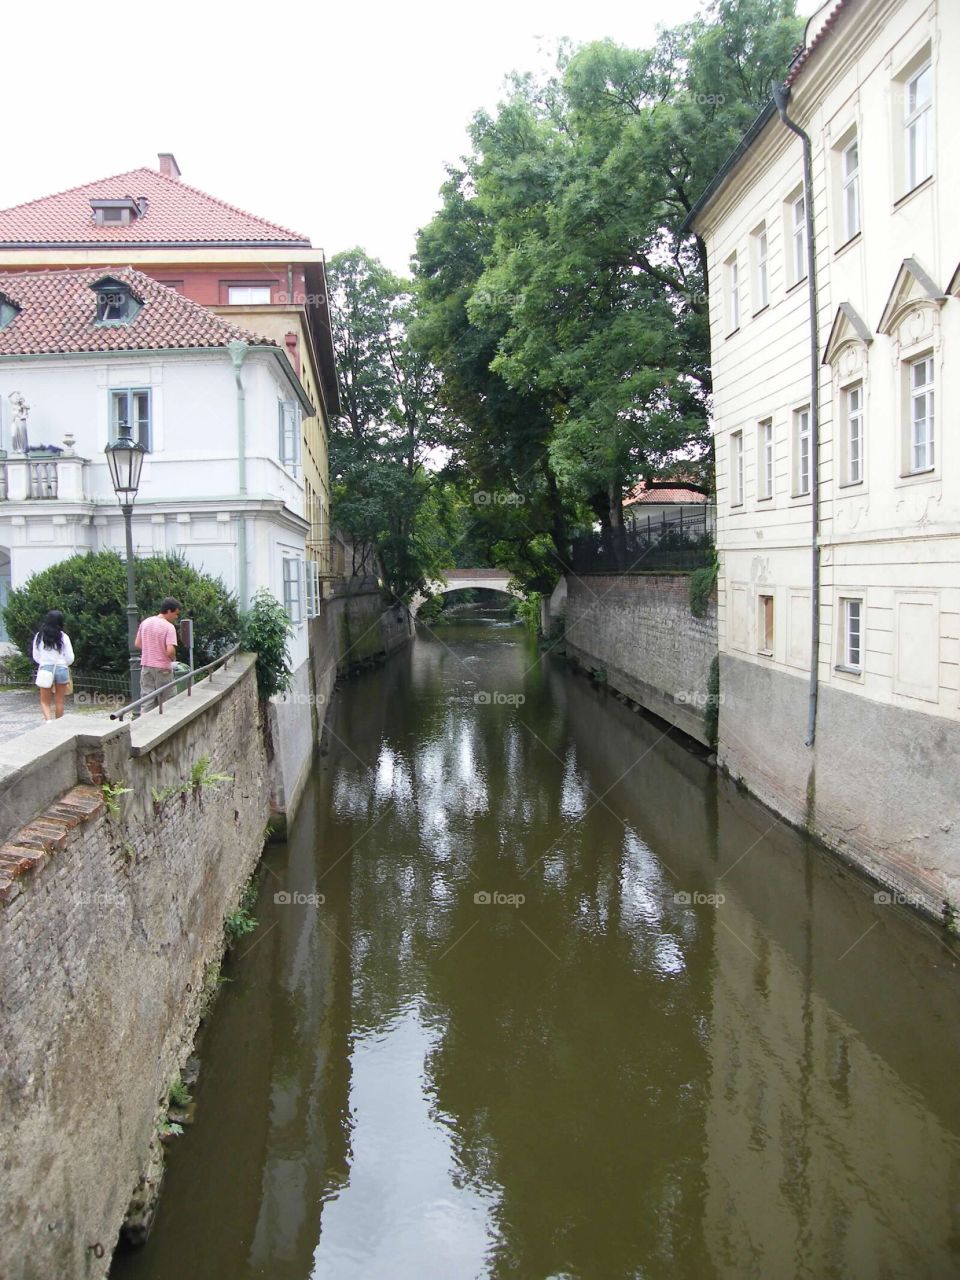 Narrow canal 